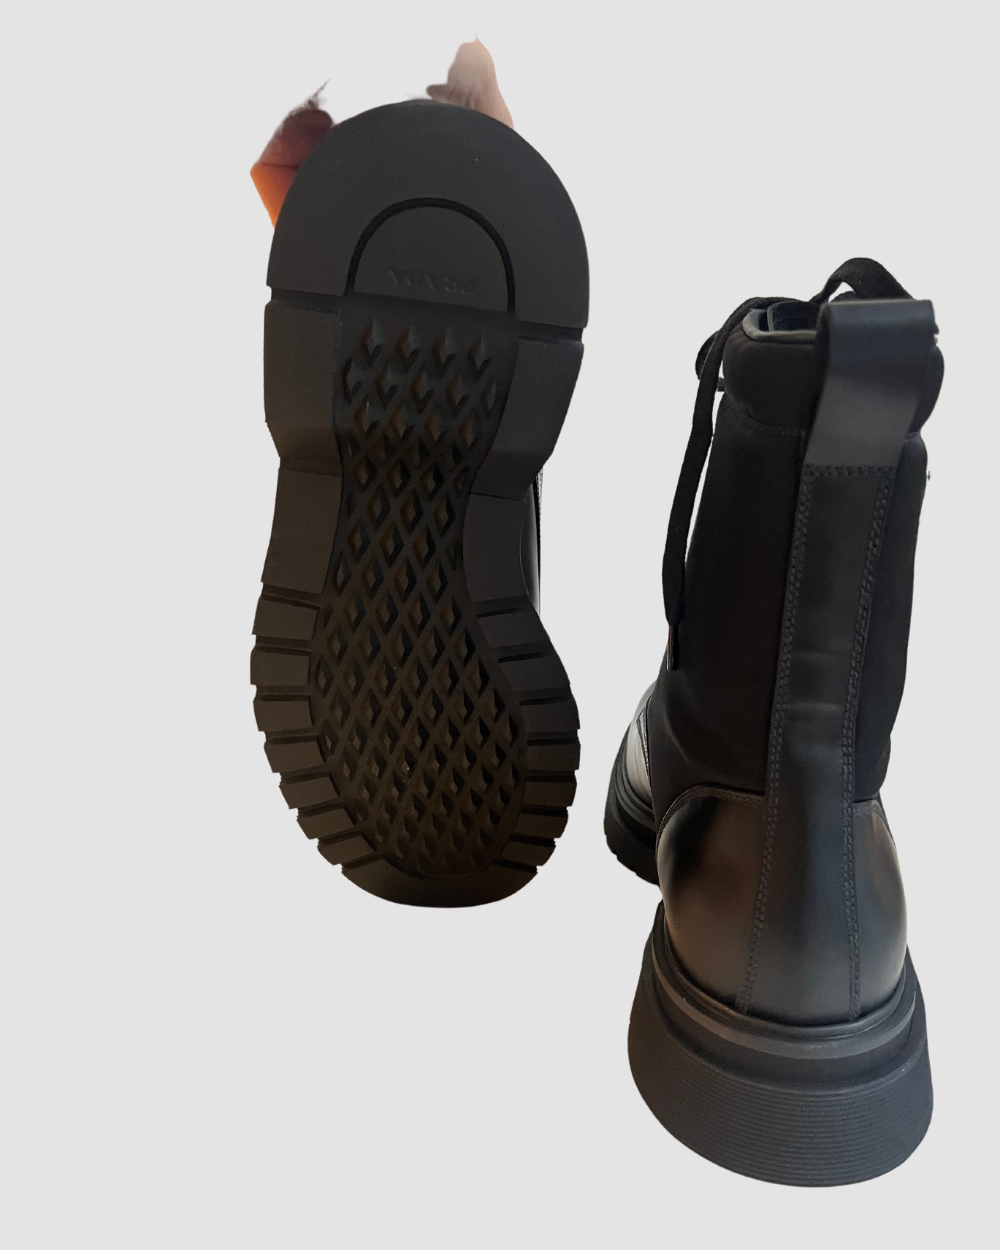 Prada Black Leather & Nylon Combat Boots